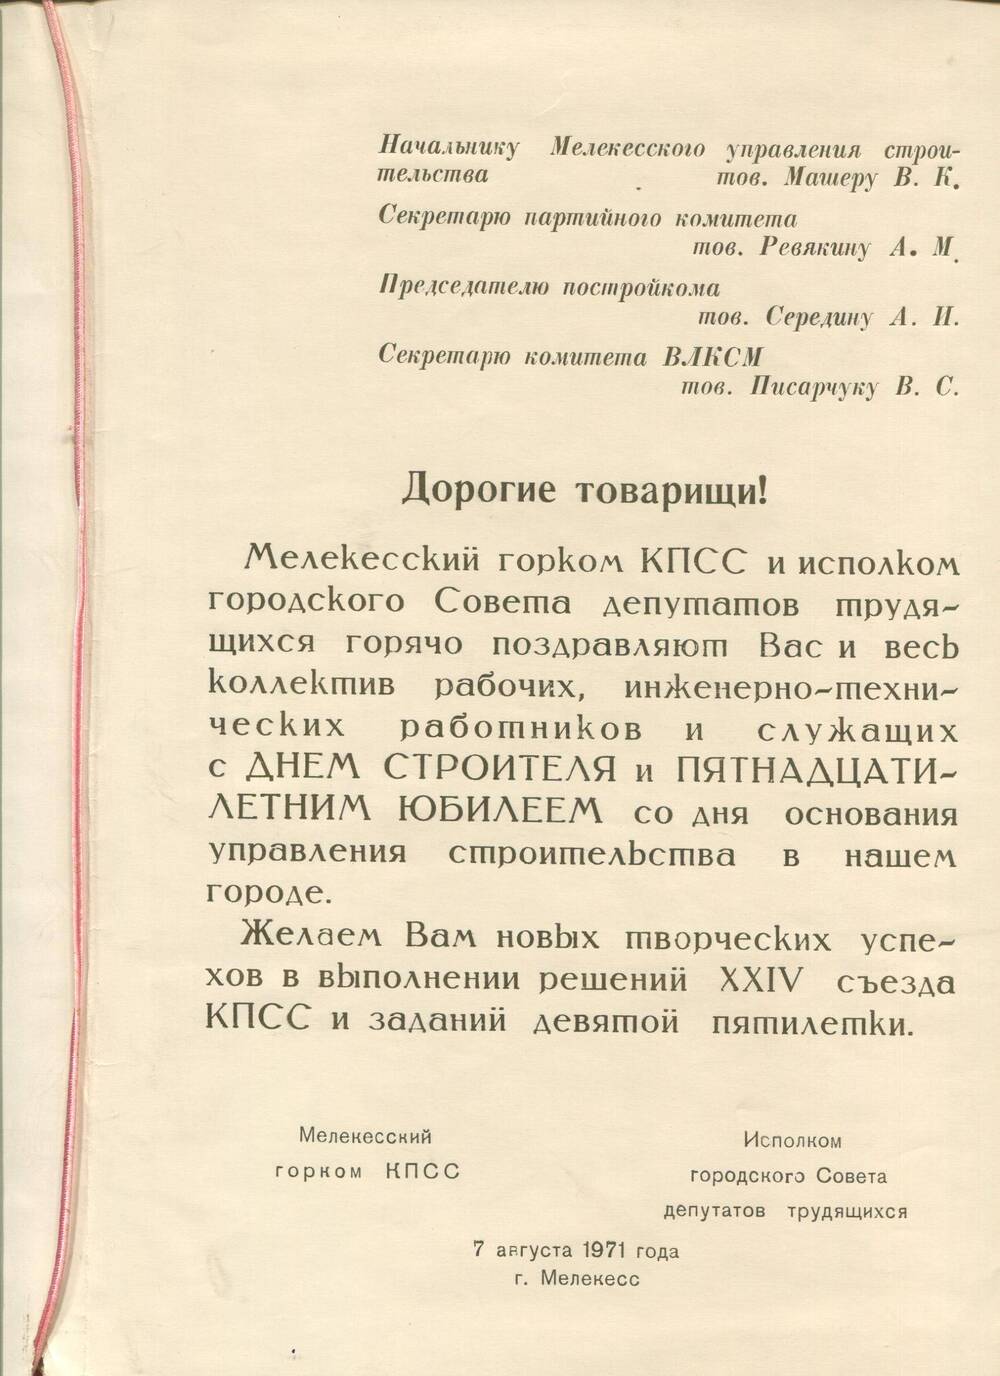 Поздравительный адрес с 15-летием со дня основания управления строительства. г.Мелекесс, 1971 г.